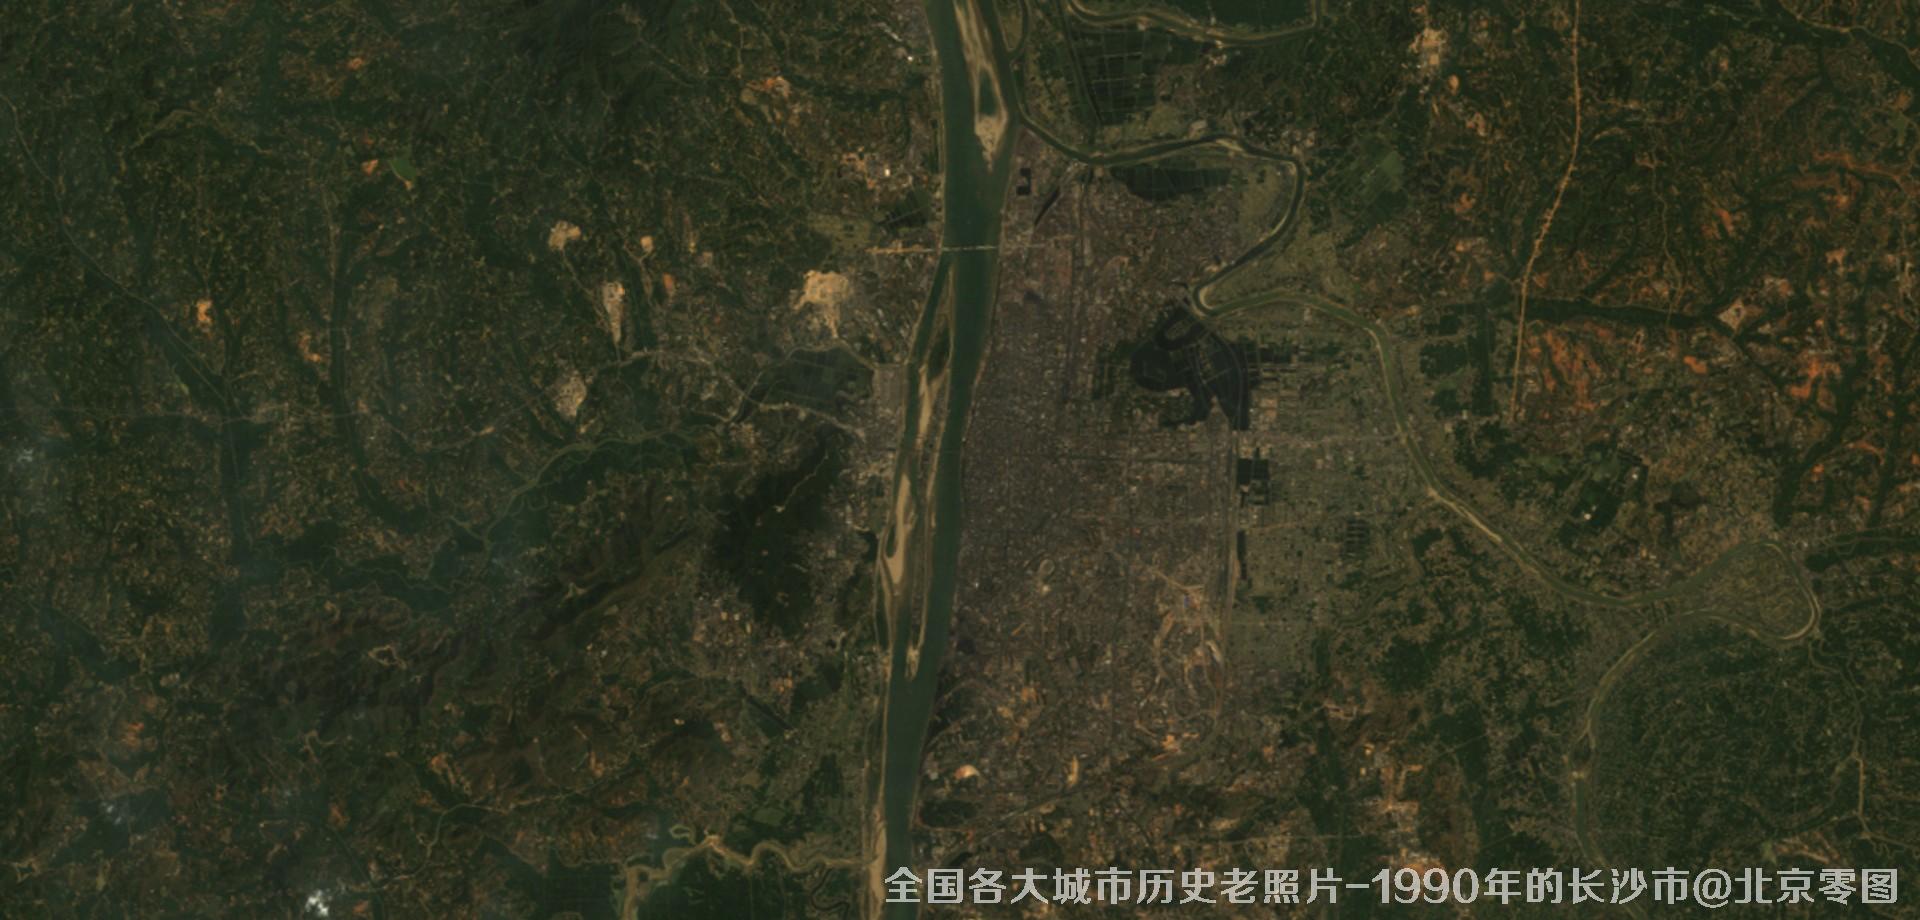 美国Landsat卫星拍摄的1990年的湖南省长沙市历史卫星影像图